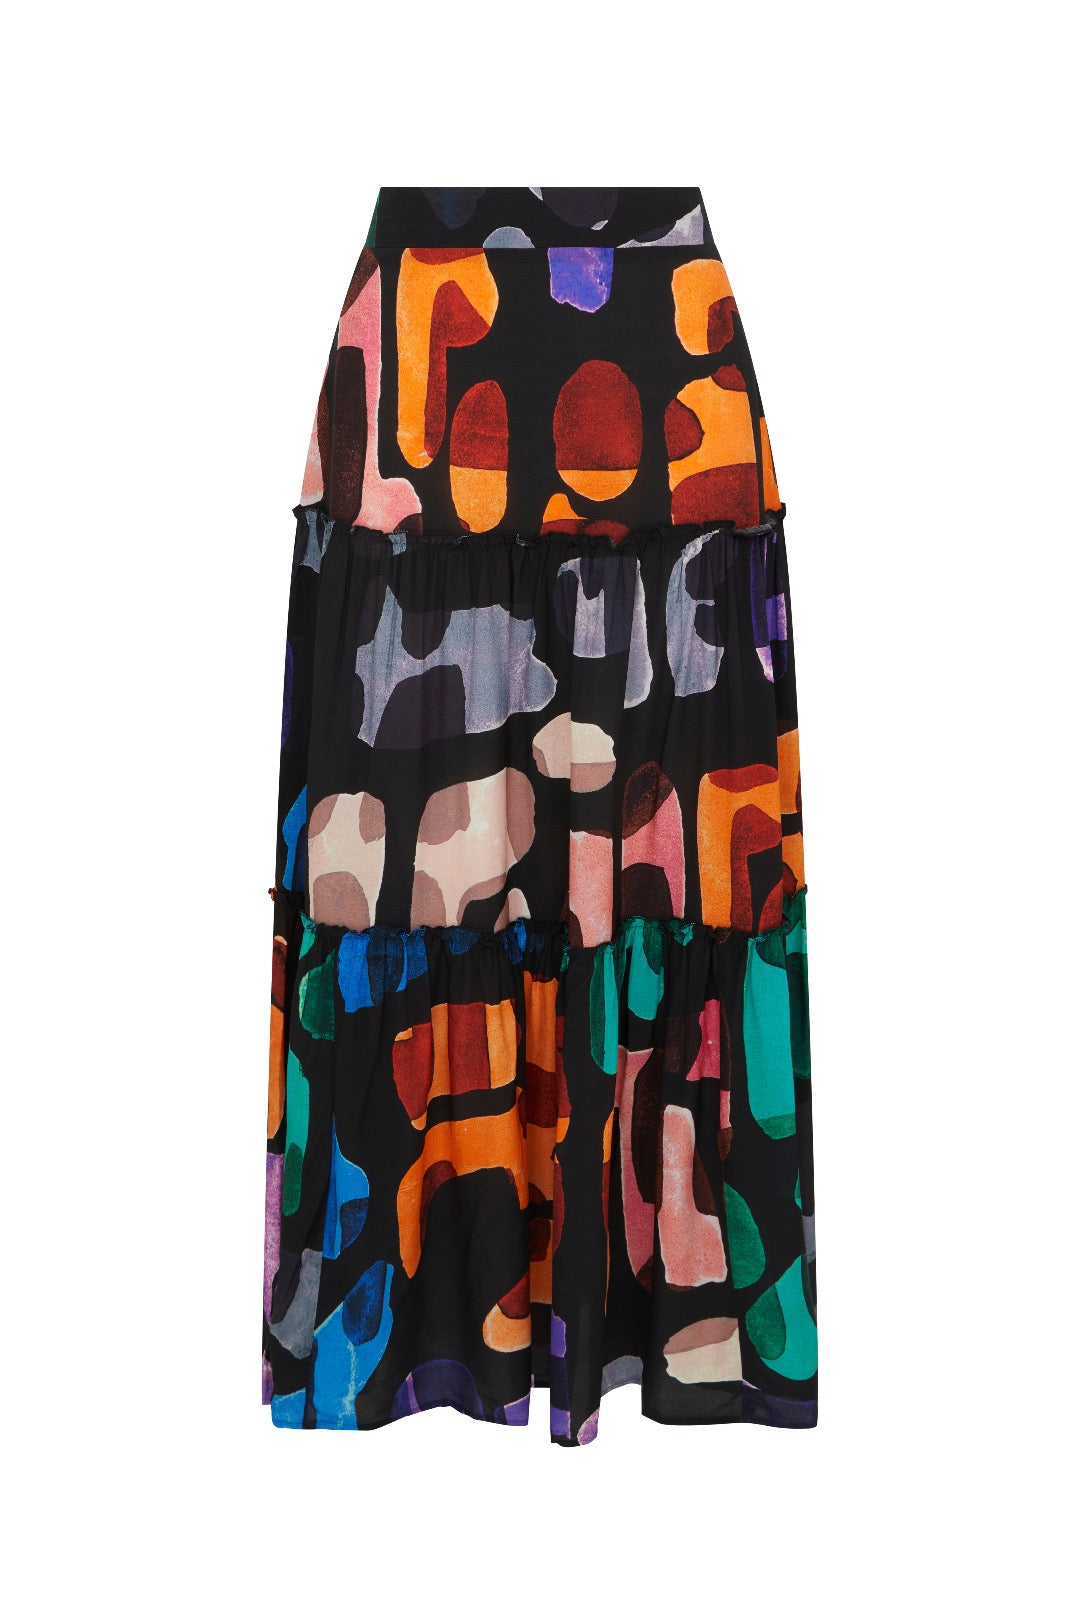 Fresha London Women's Black Harper Skirt Abstract In Multi